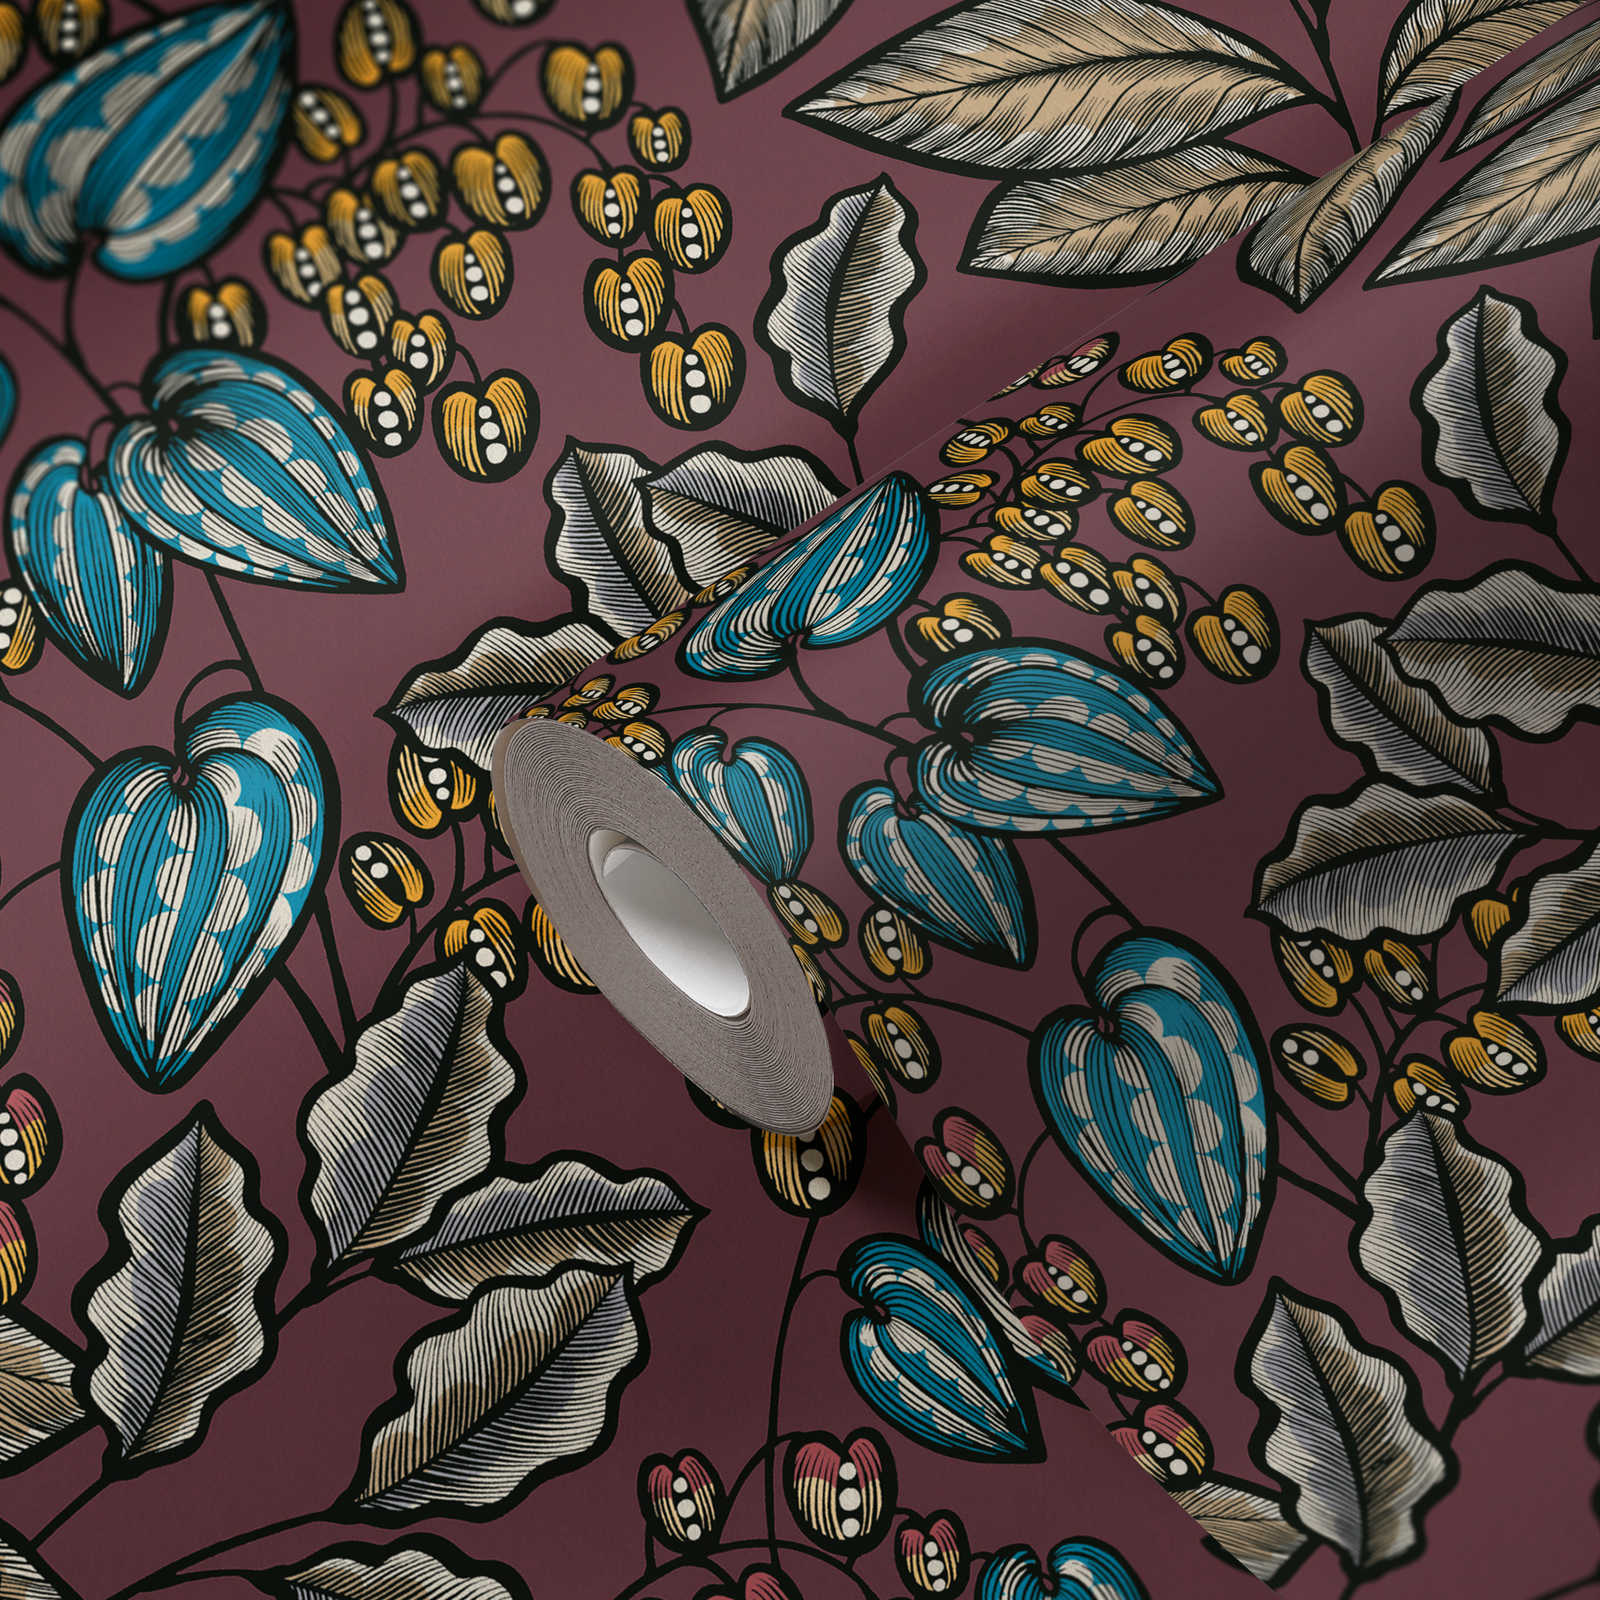             Papier peint floral lilas avec impression de feuilles dans le style scandinave
        